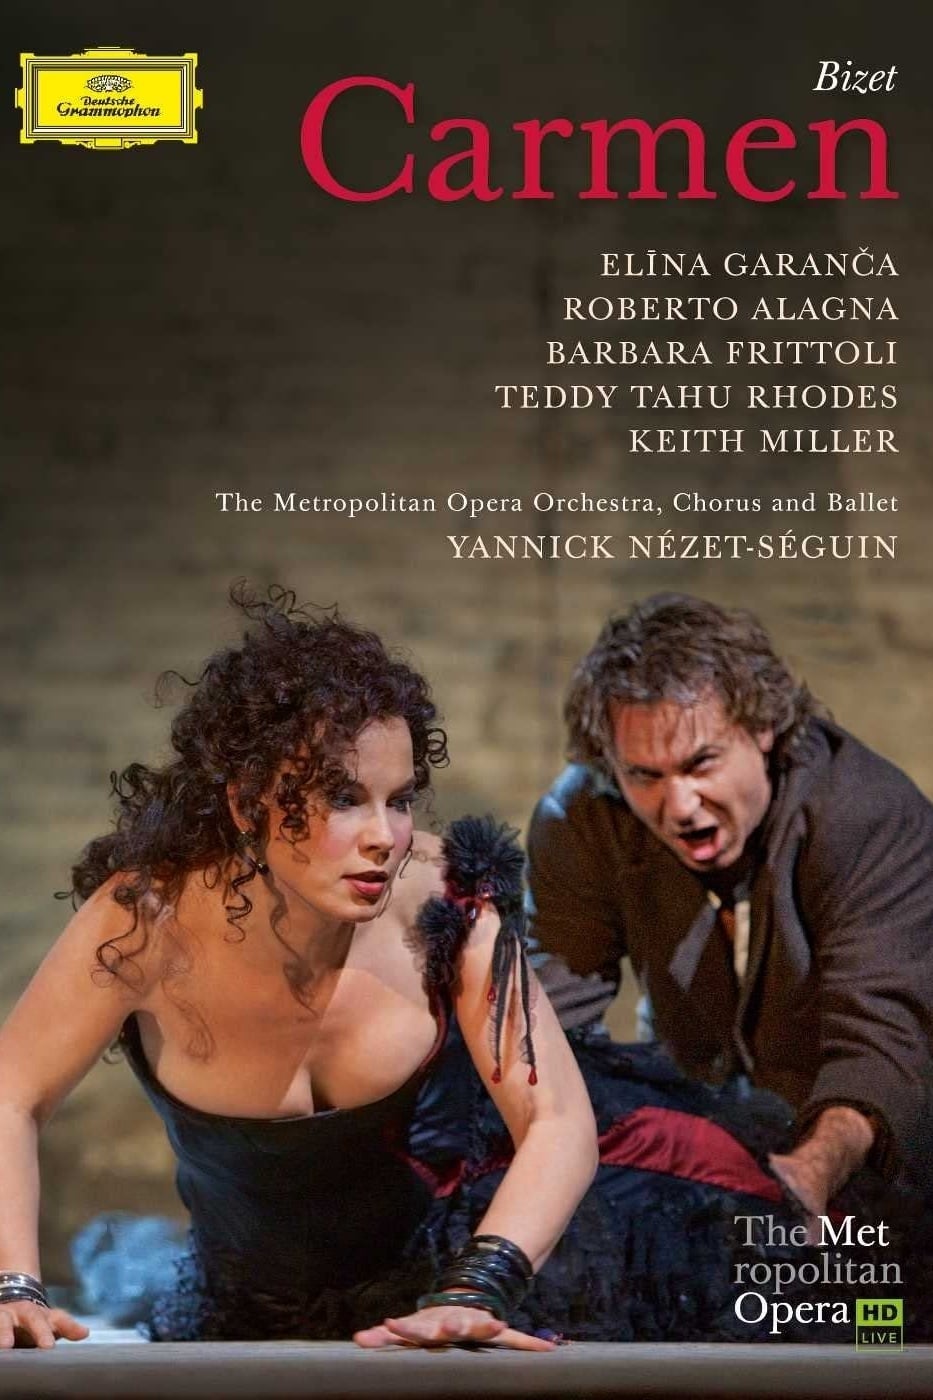 Bizet: Carmen (2010)